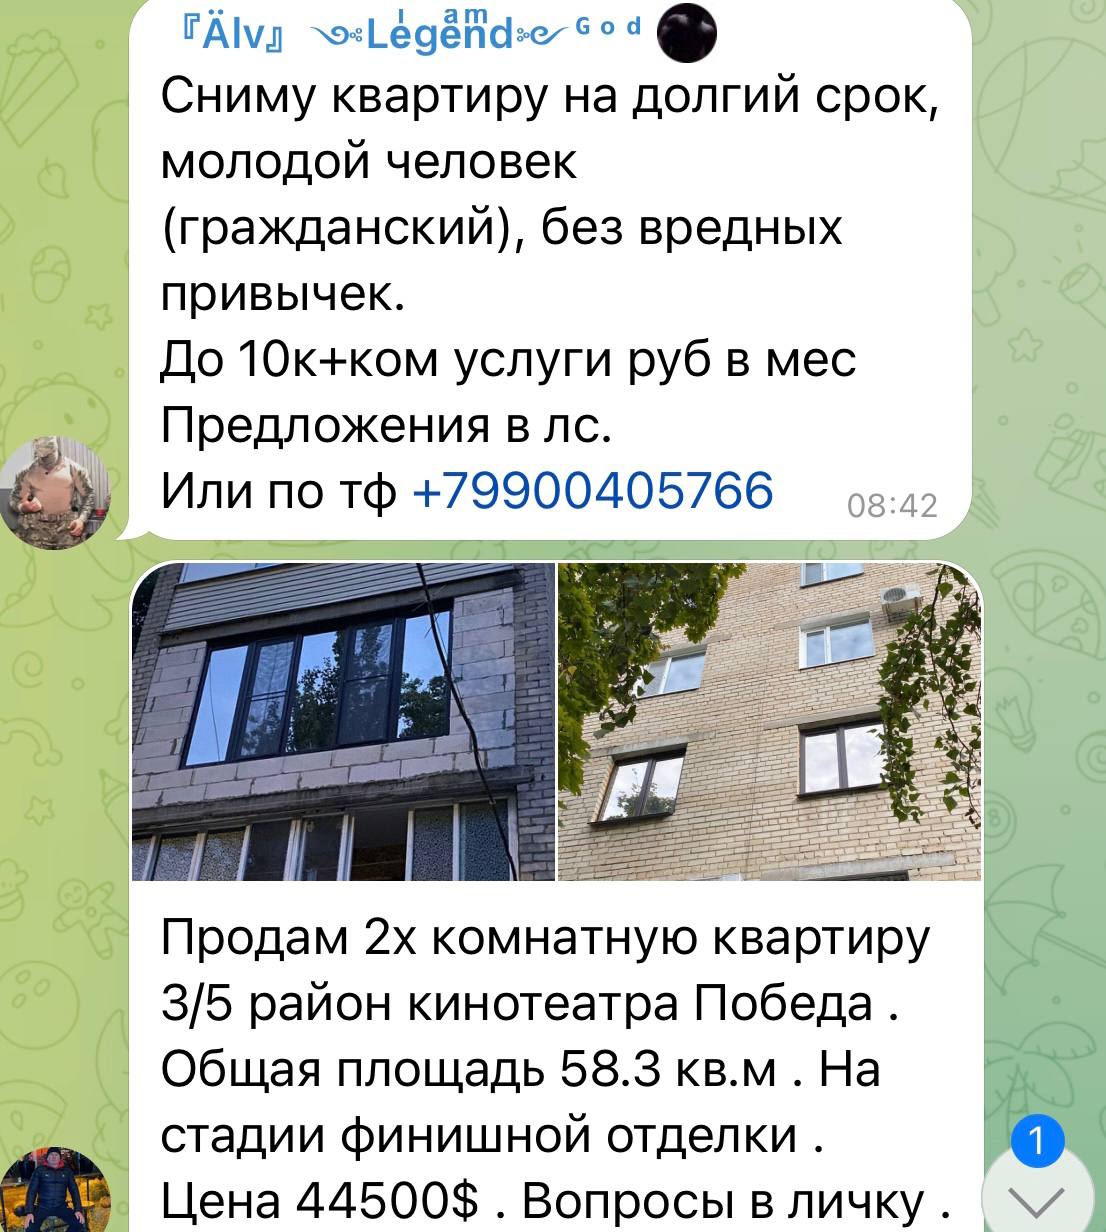 В связи с наплывом «понаехавших» россиян, взлетели цены не только на аренду жилья. 4